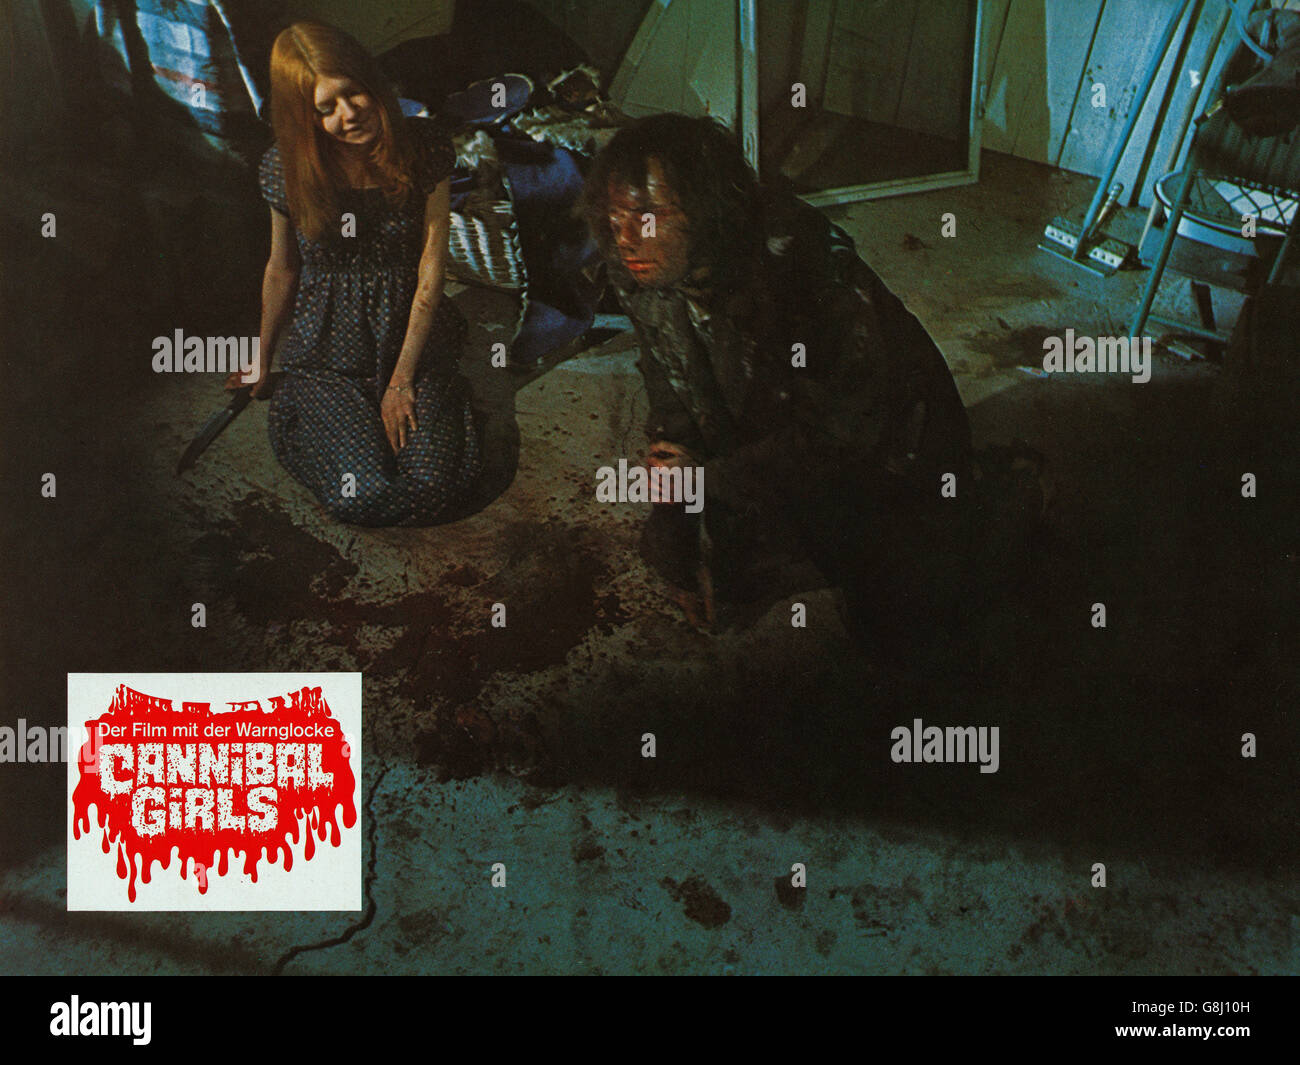 Cannibal ragazze, aka: Cannibal Girls - Der Film mit der Warnglocke, Kanada 1973, Regie: Ivan Reitman, Darsteller: Bonnie Neilson Foto Stock